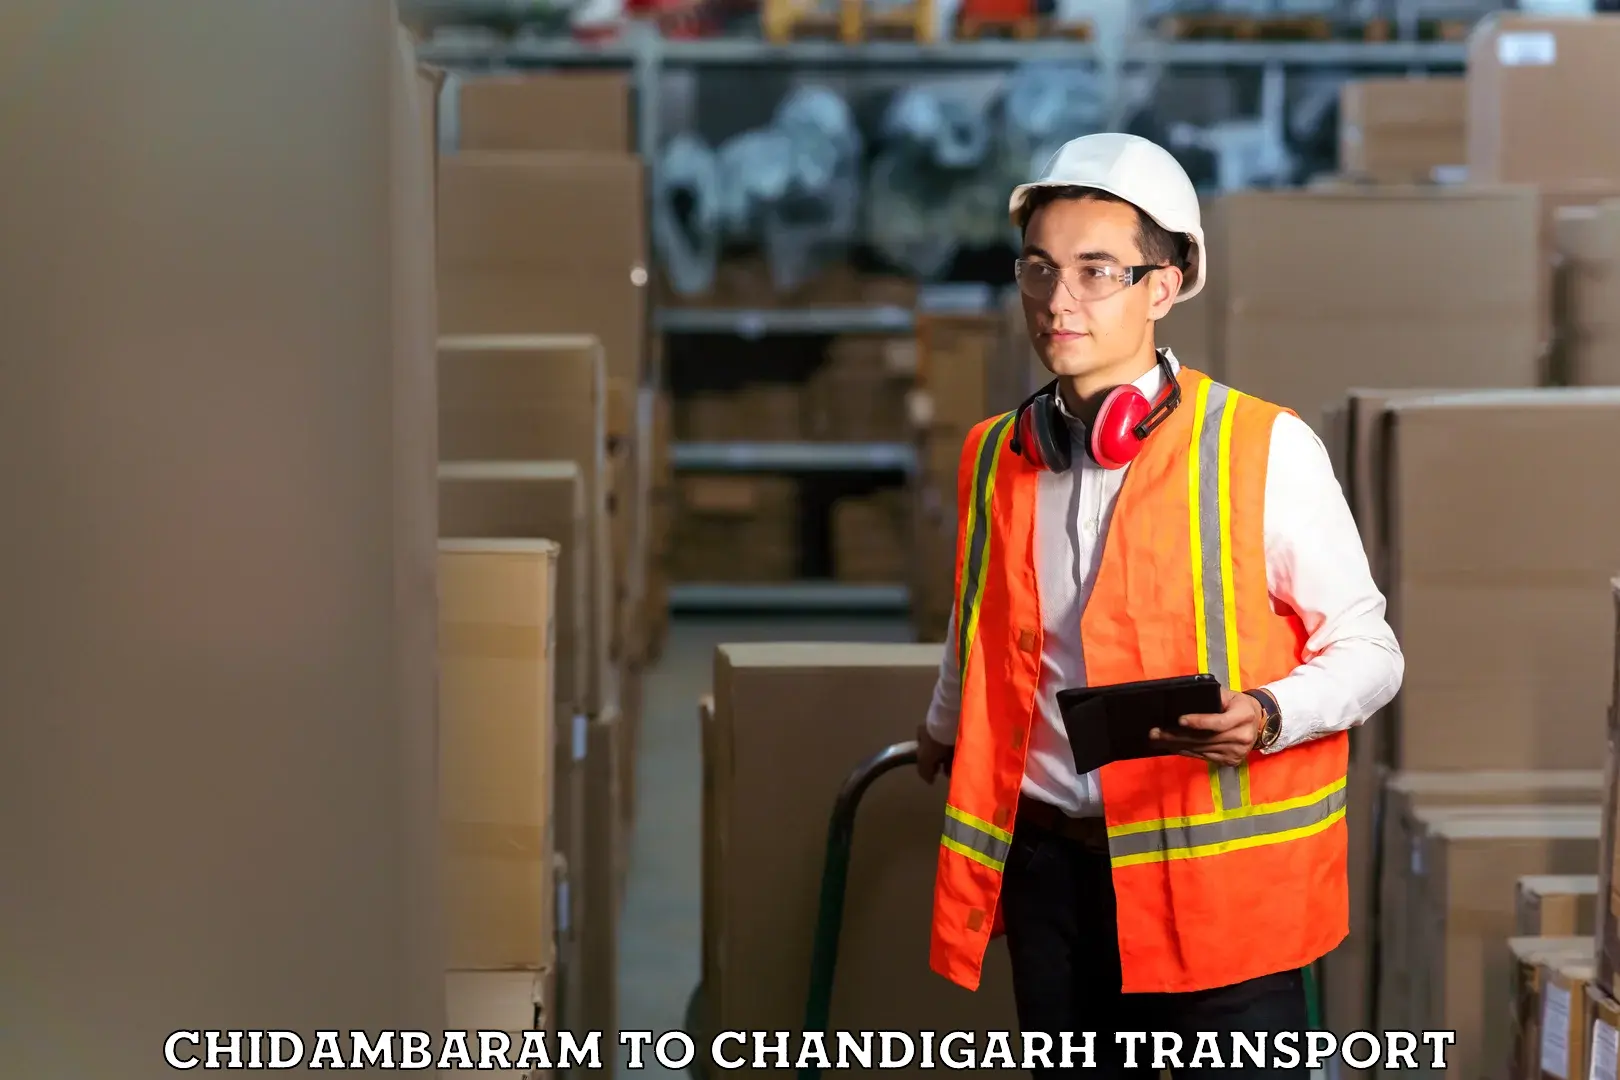 Shipping partner Chidambaram to Chandigarh